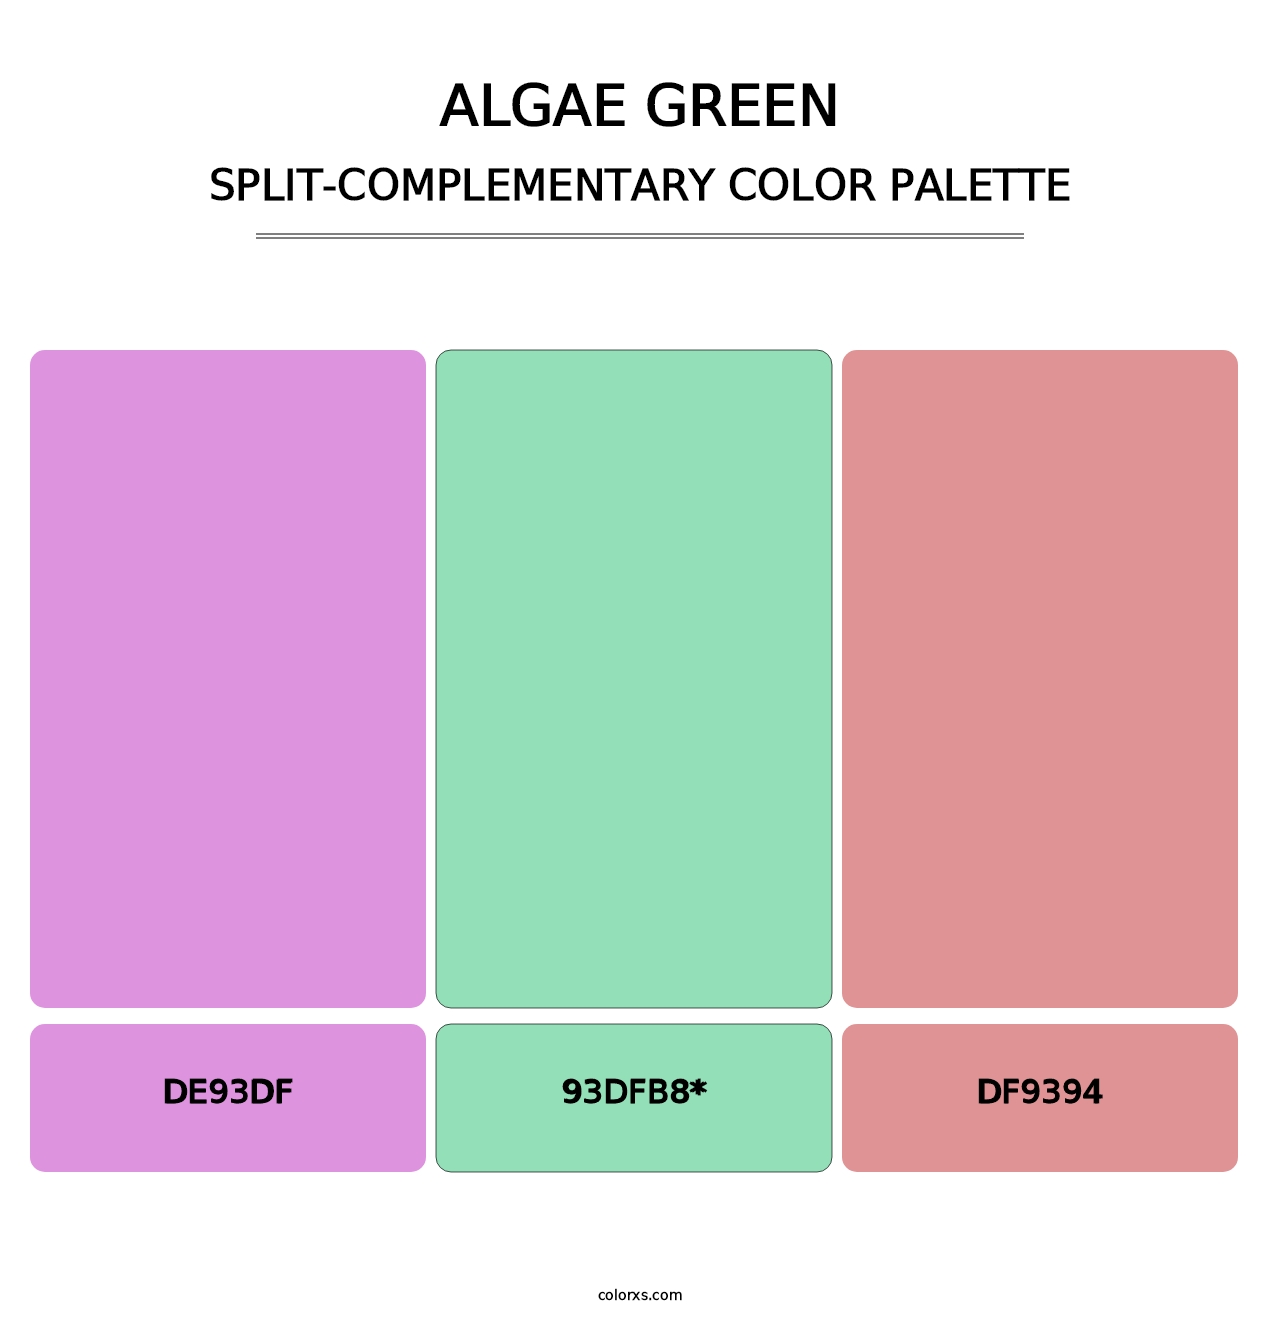 Algae Green - Split-Complementary Color Palette